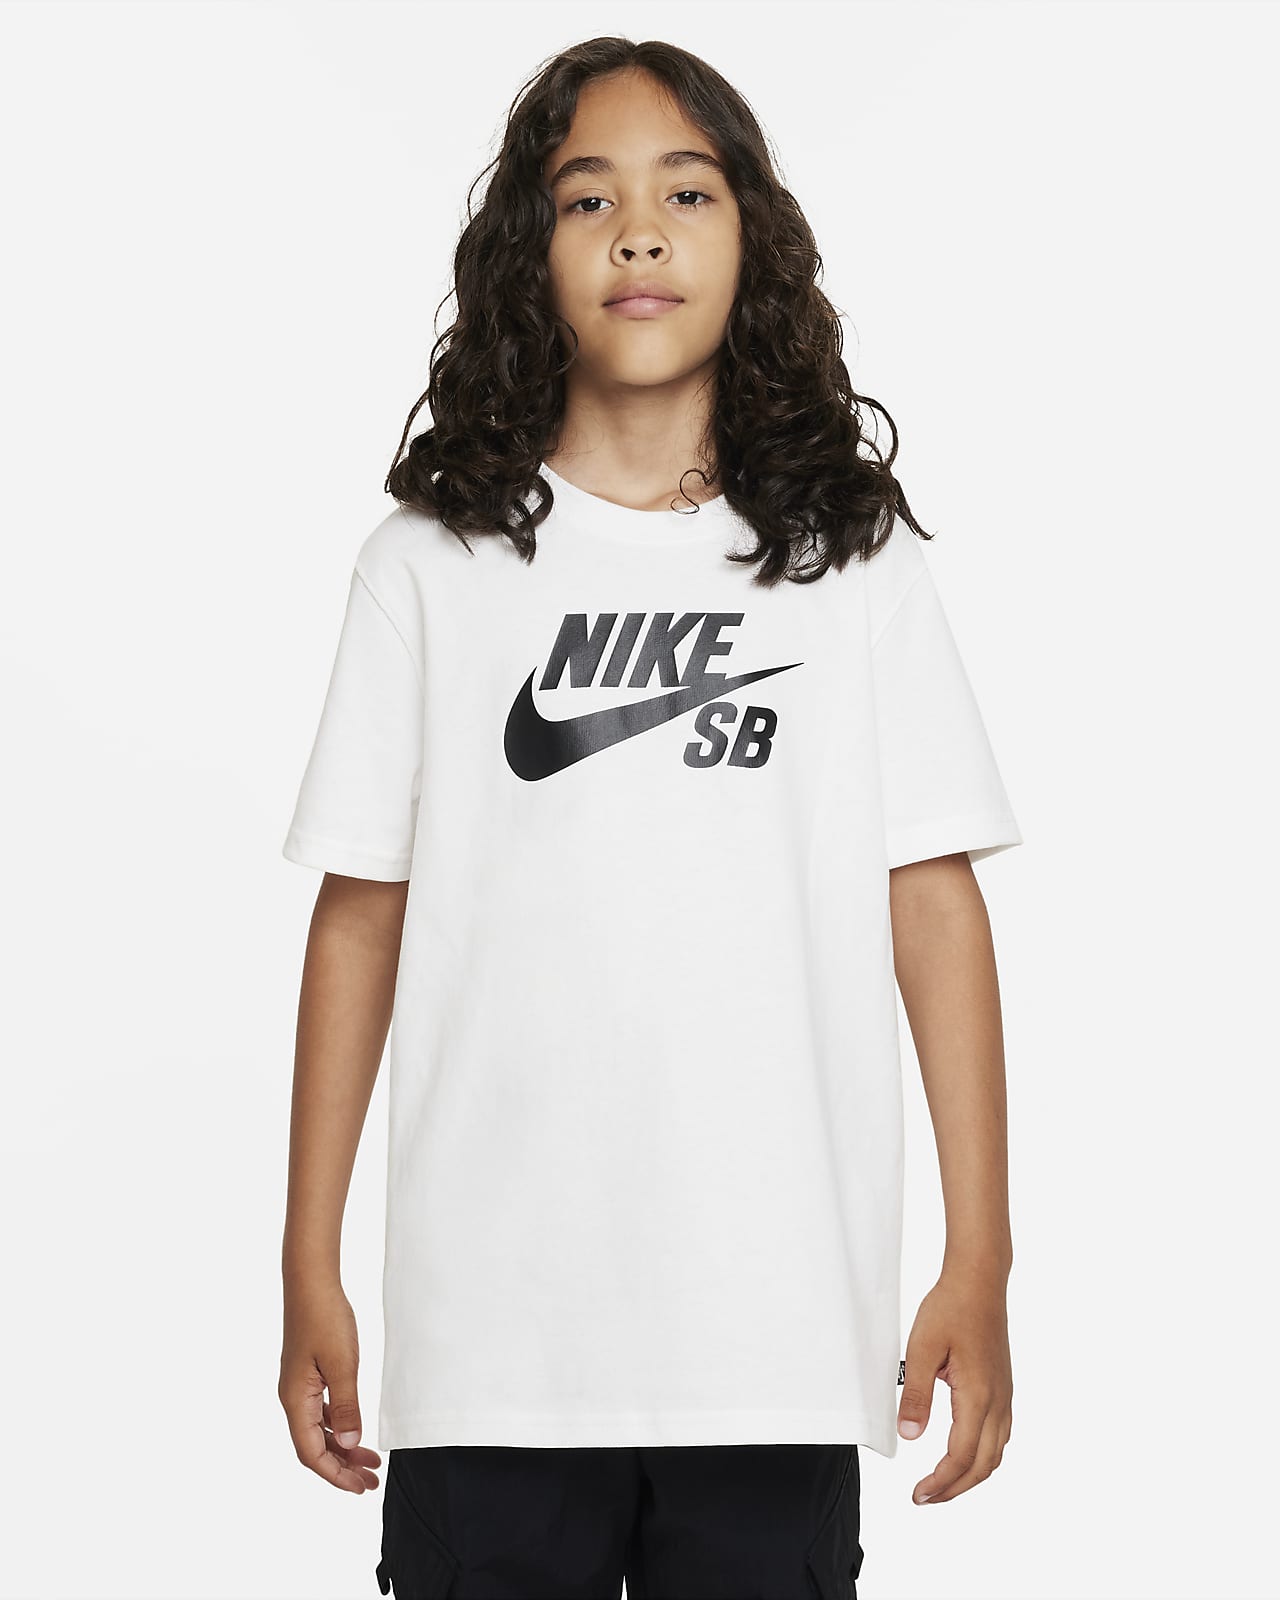 blandt sammentrækning Hændelse Nike SB Big Kids' T-Shirt. Nike.com